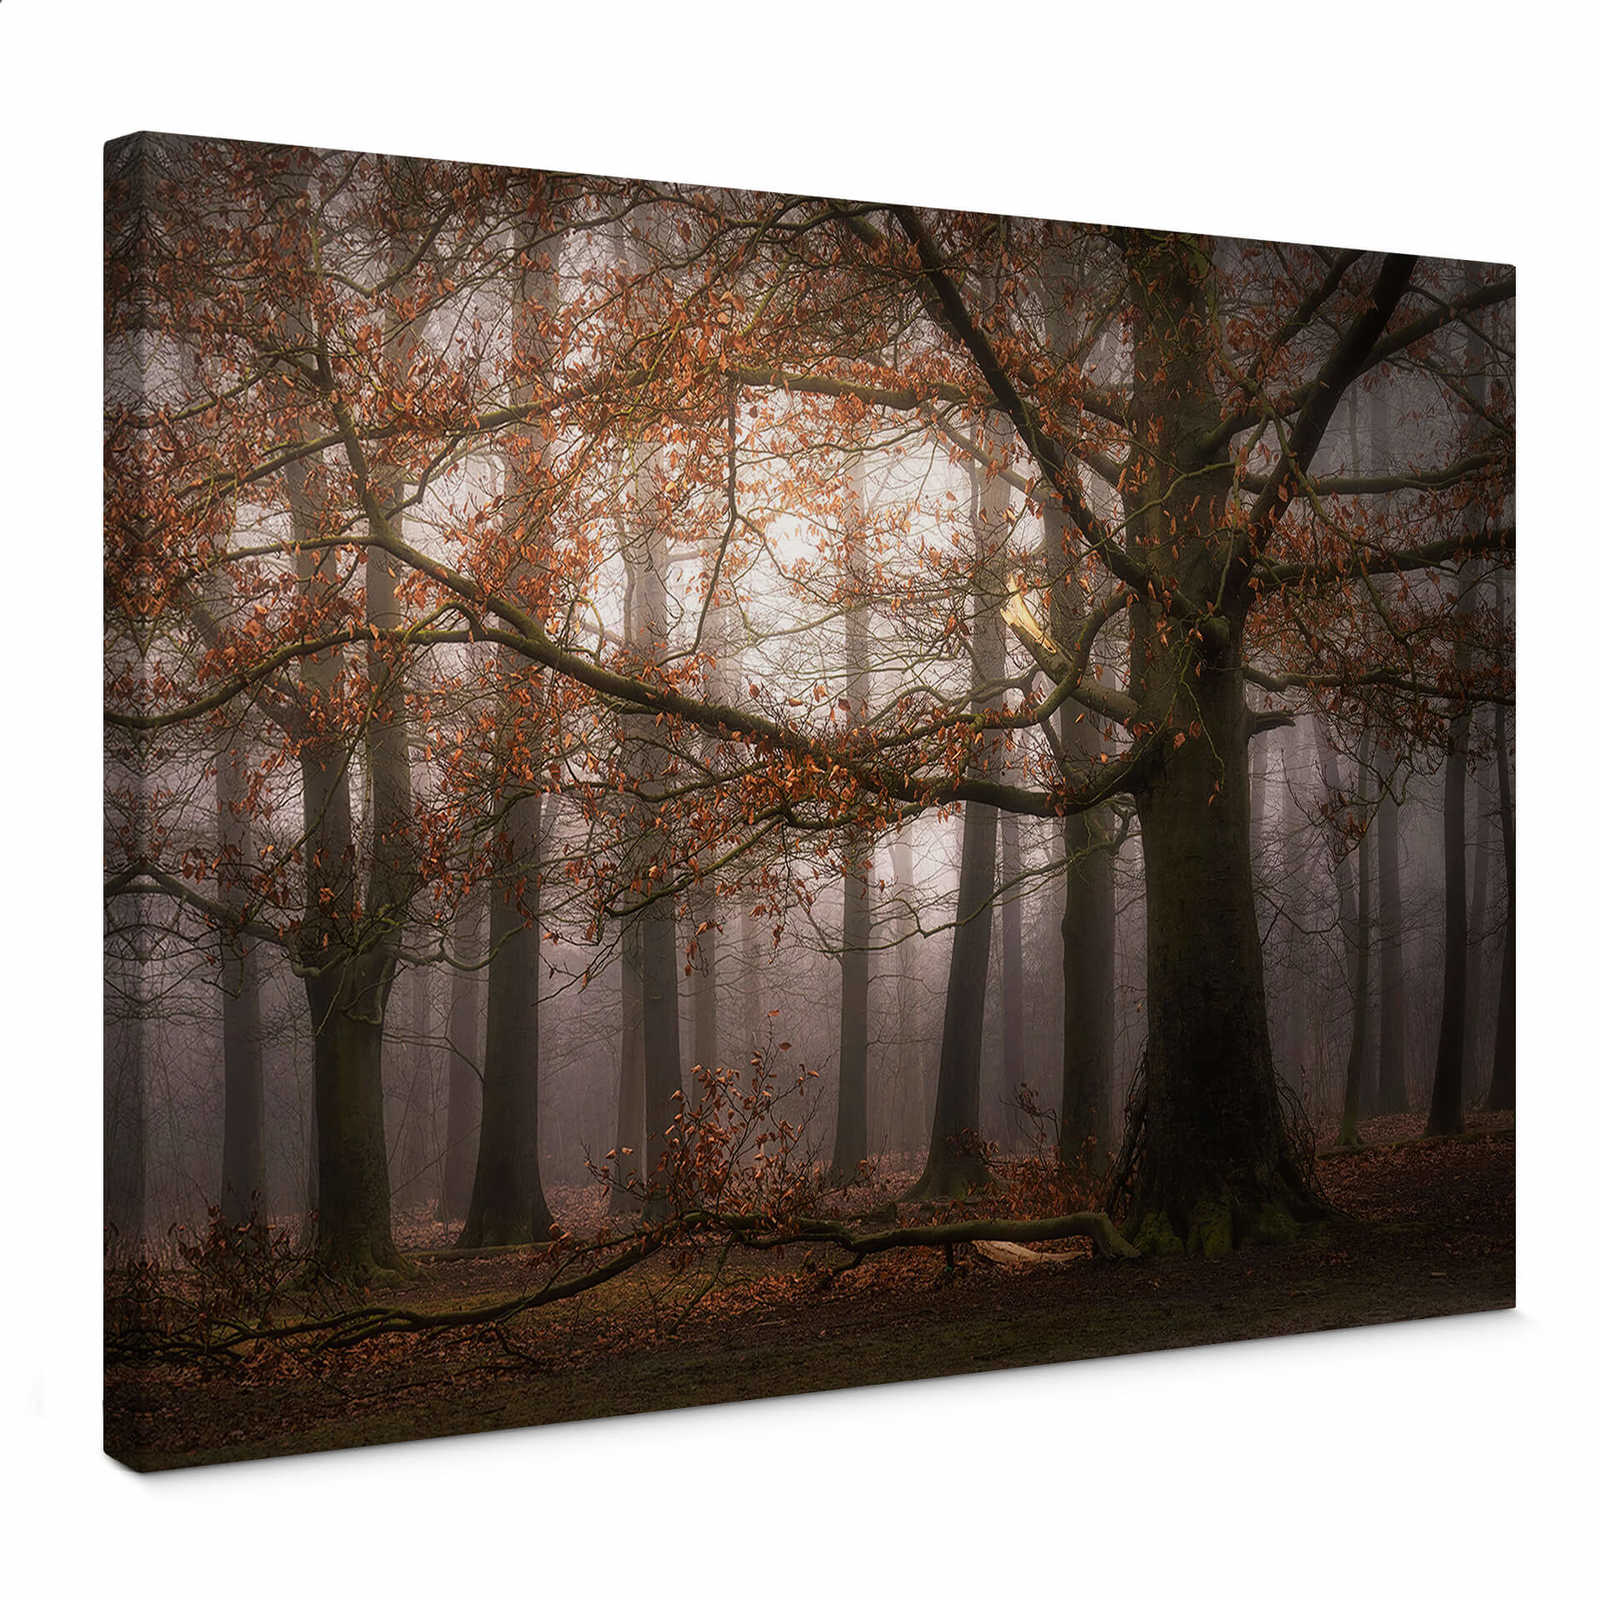 Cuadro en lienzo con bosque frondoso en noviembre by Digemans - 0,70 m x 0,50 m
